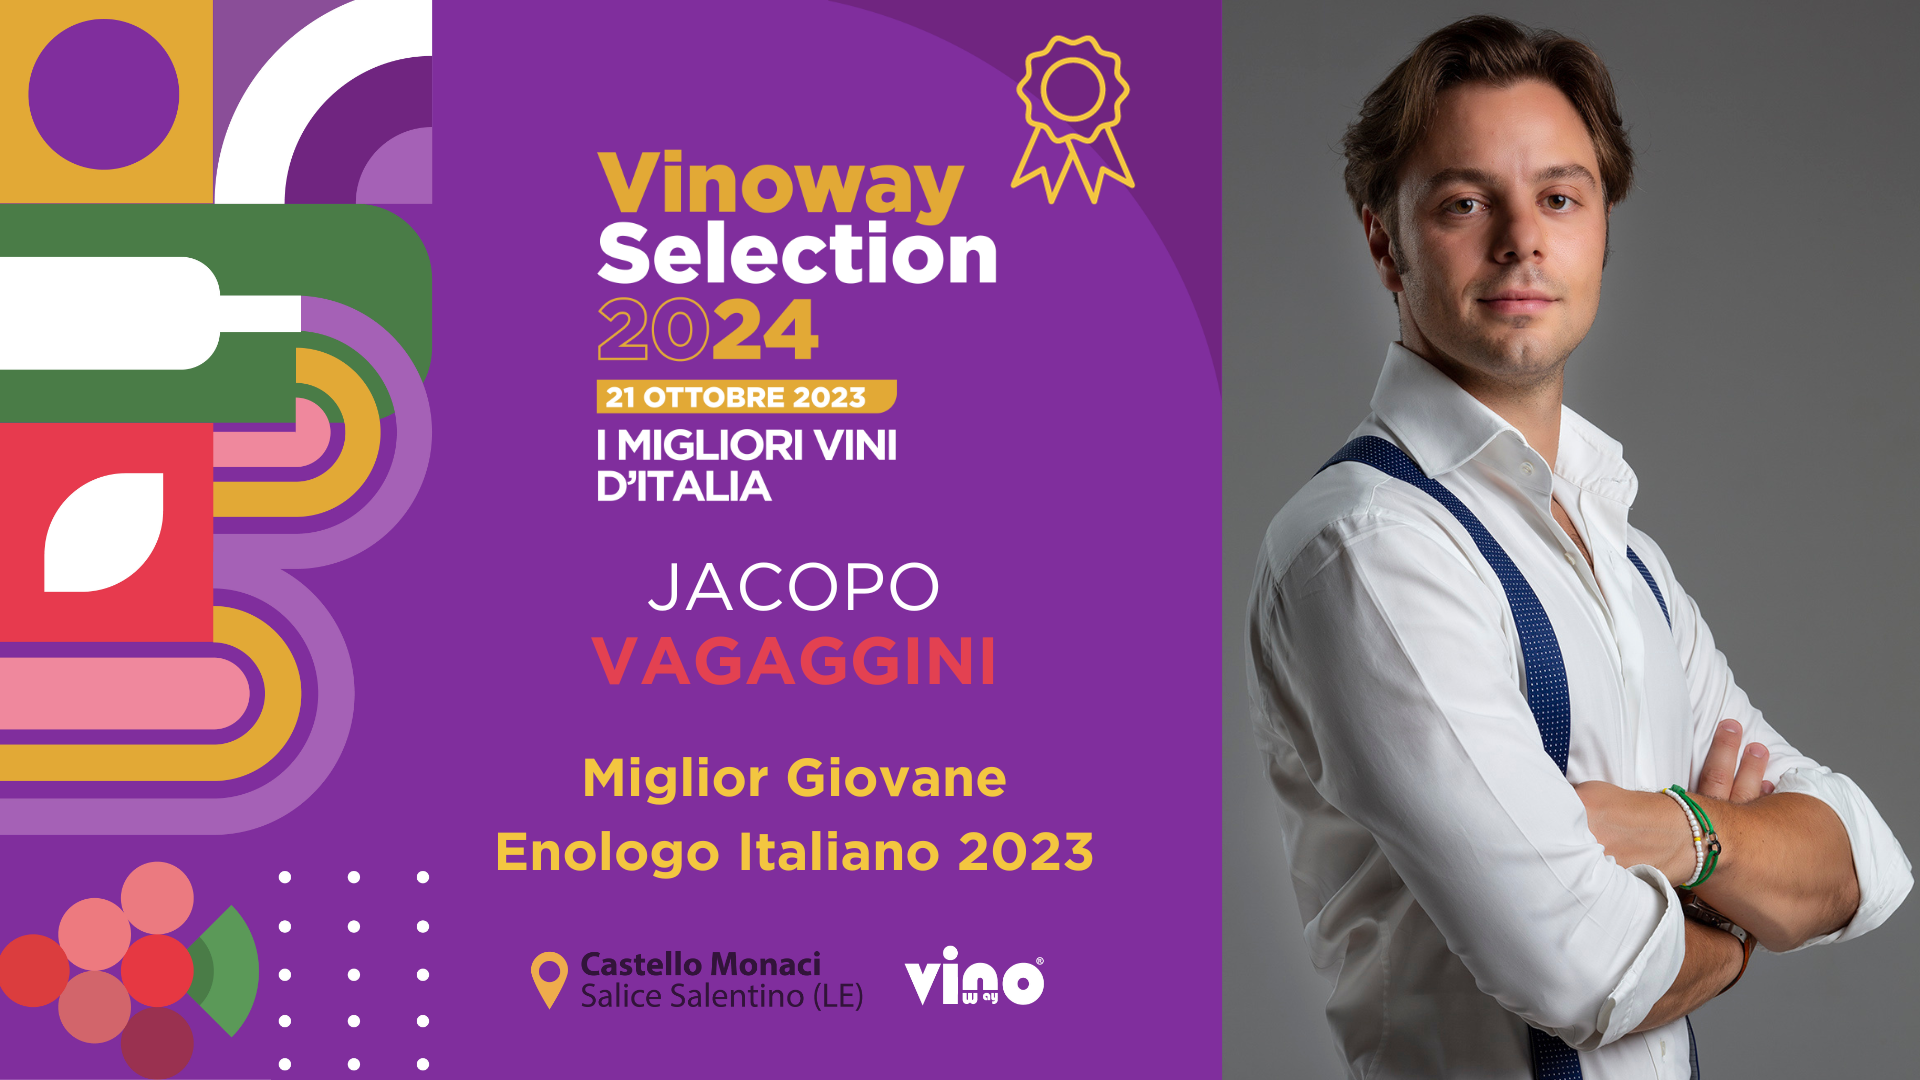 Jacopo Vagaggini è “Miglior Giovane Enologo Italiano” 2024, immagine da comunicato stampa